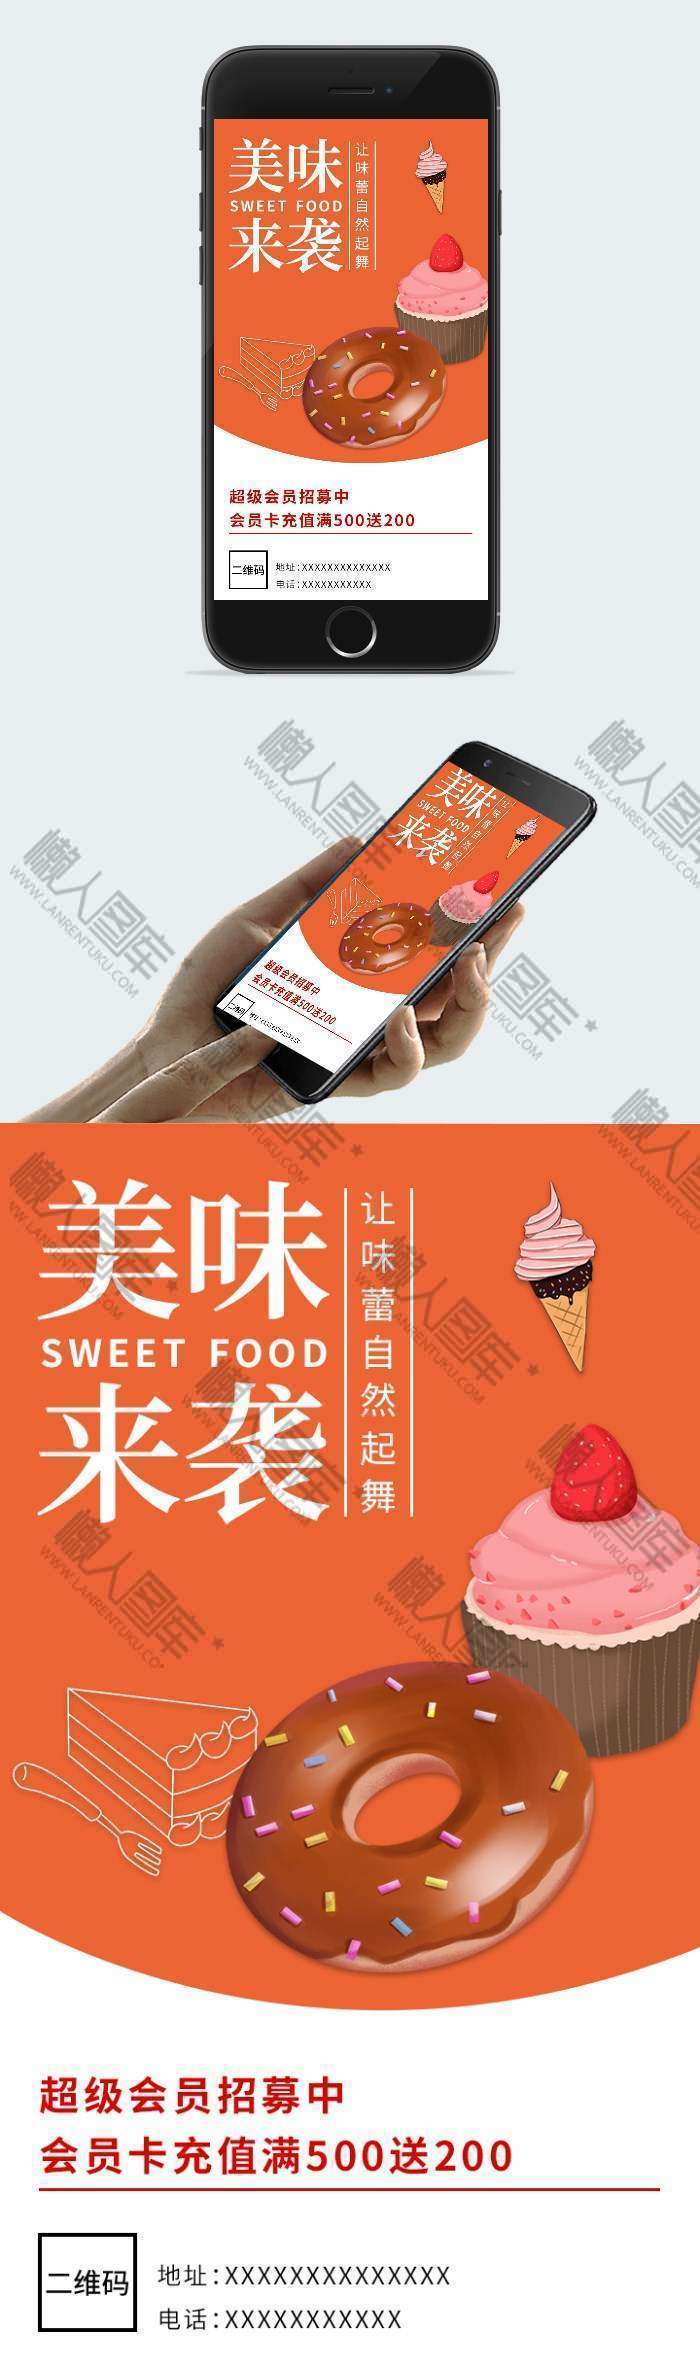 美味来袭甜品店会员充值插画配图手机海报